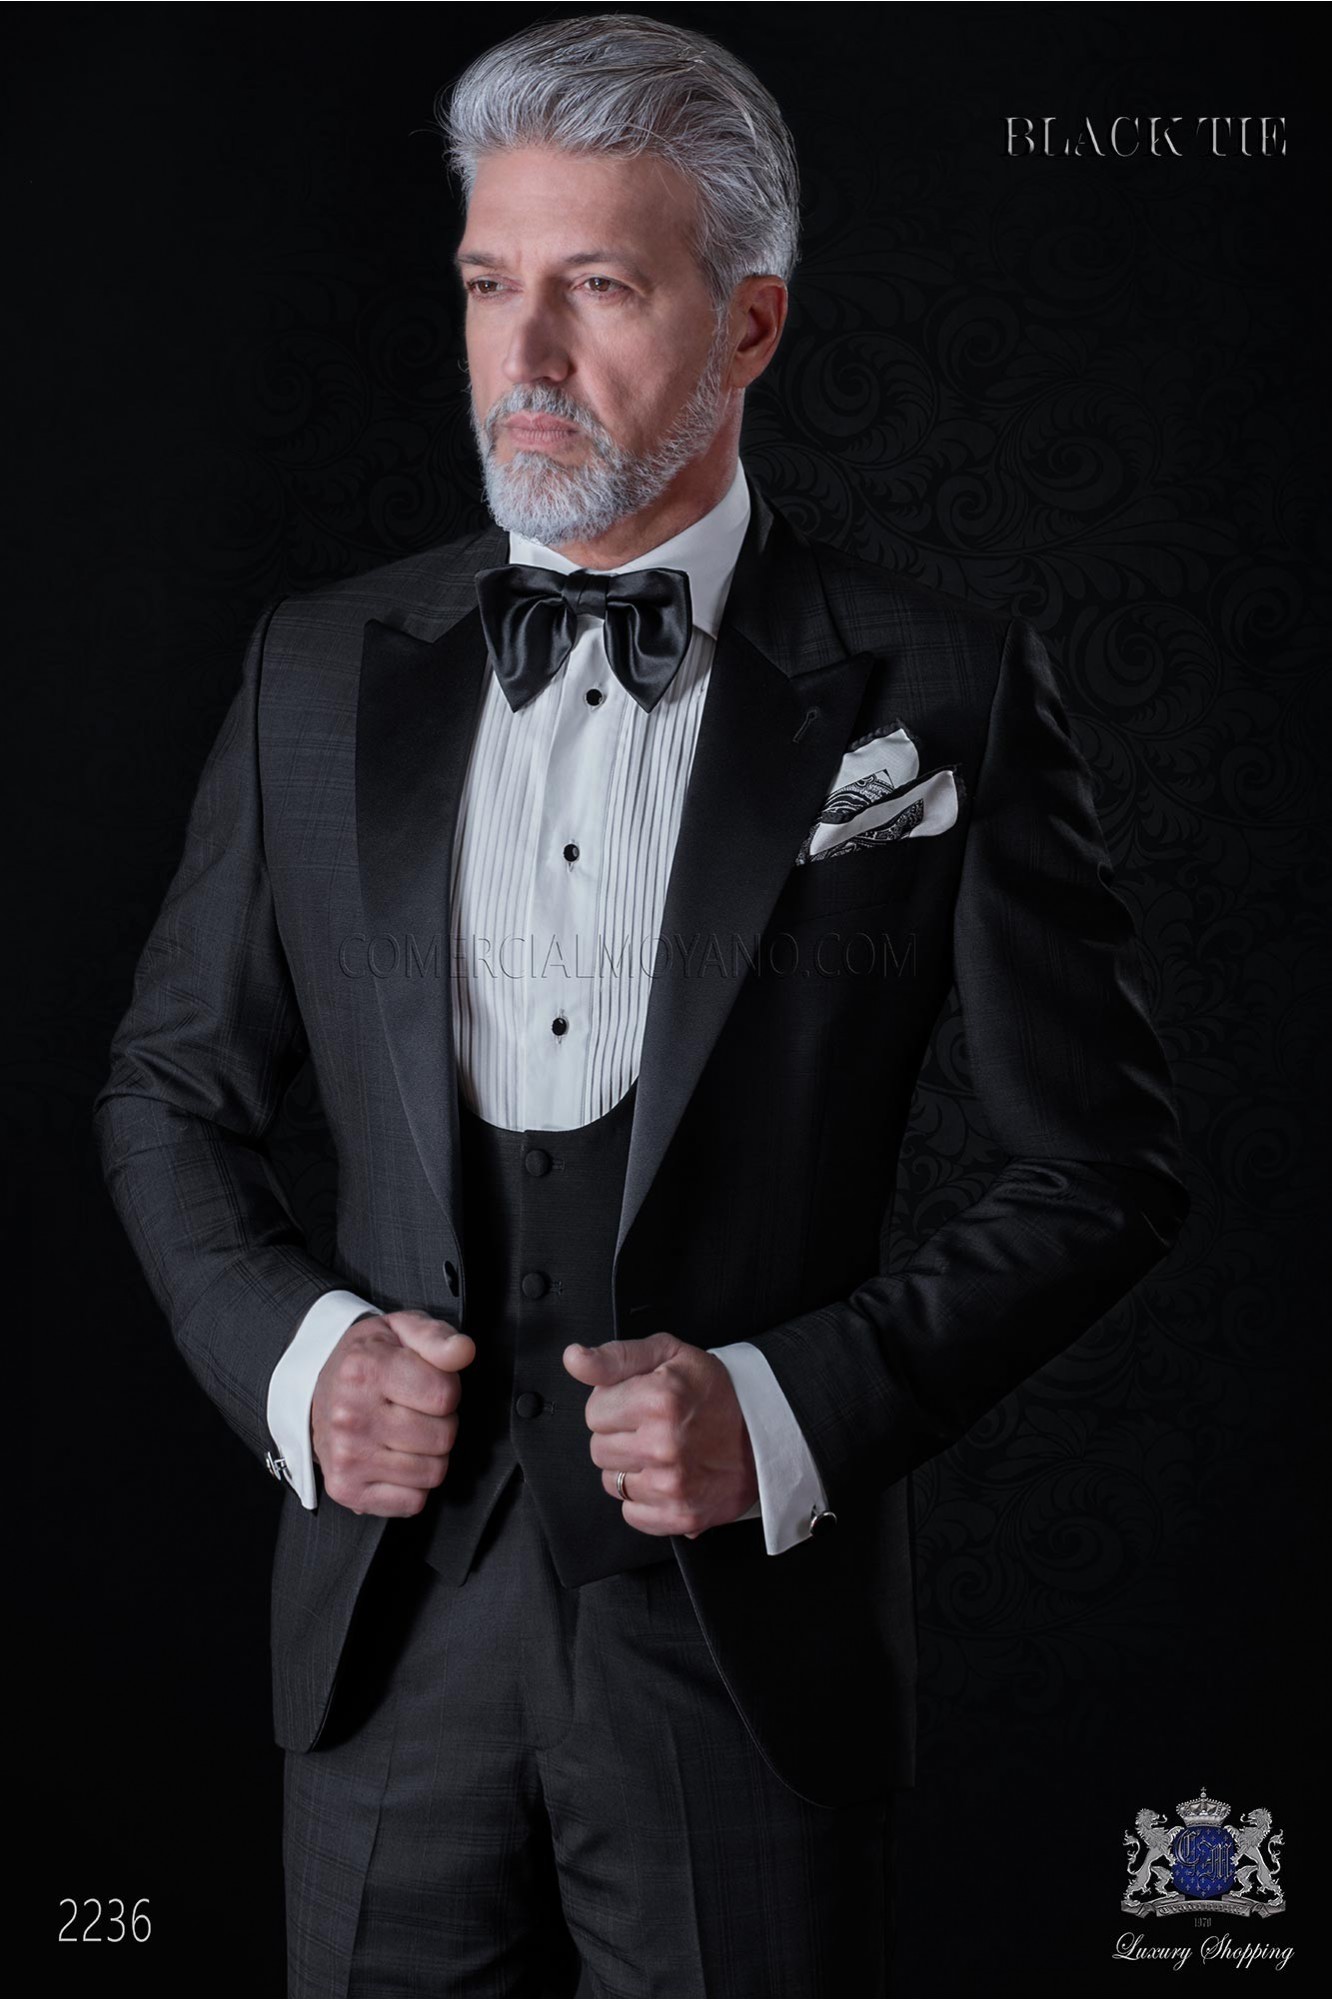 Esmoquin italiano negro de pura lana cuadro madrás modelo: 2236 Mario Moyano colección Black Tie